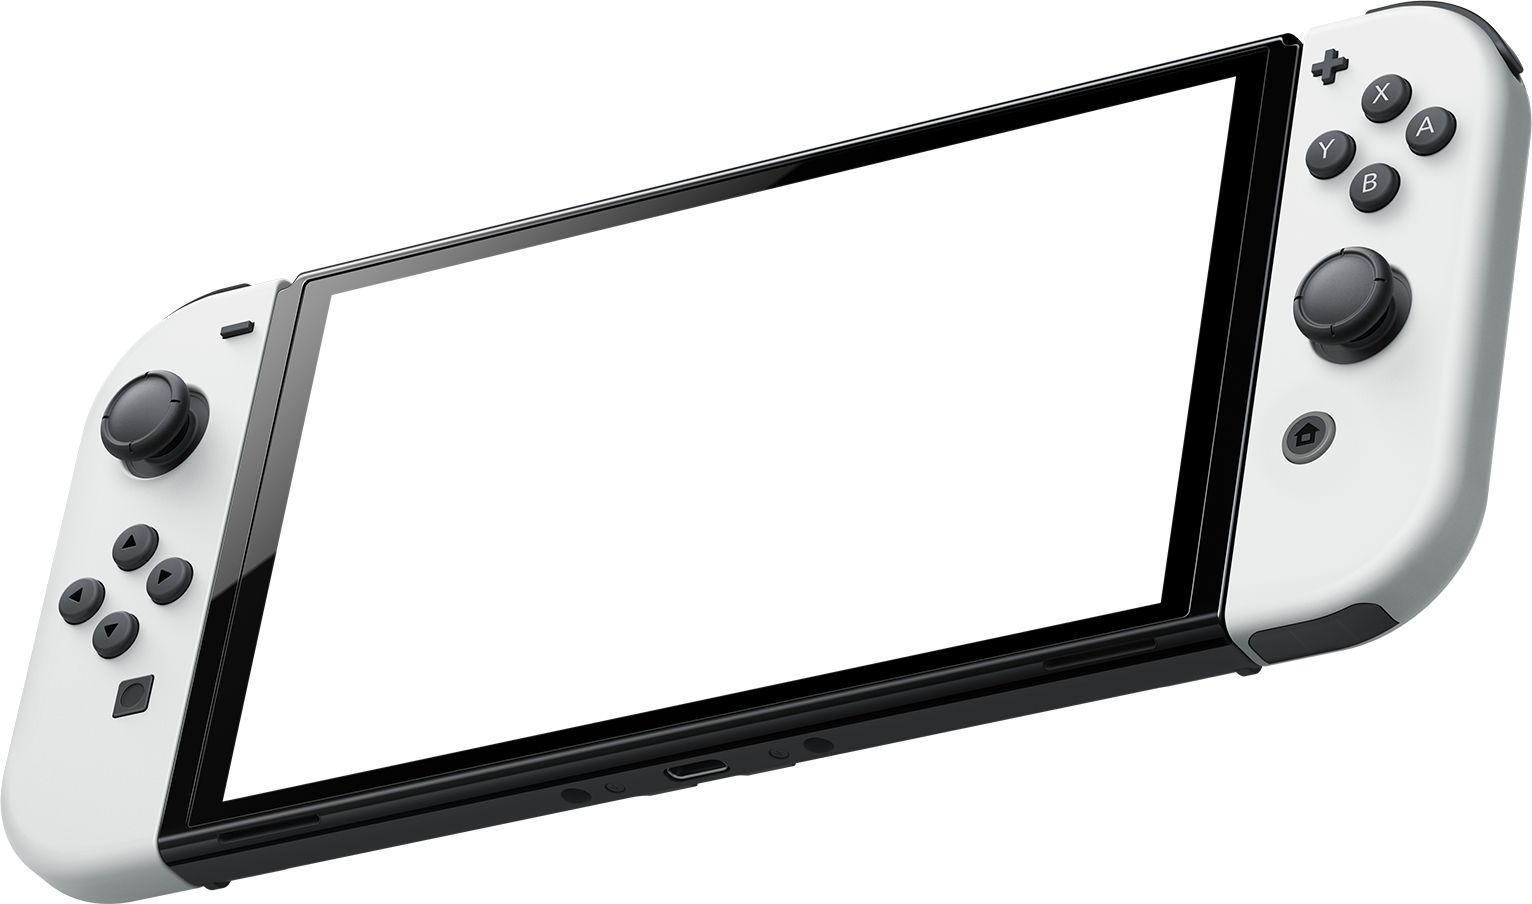 pic vivid - 搭載 7 吋 OLED 螢幕 新版 Nintendo Switch 正式發表